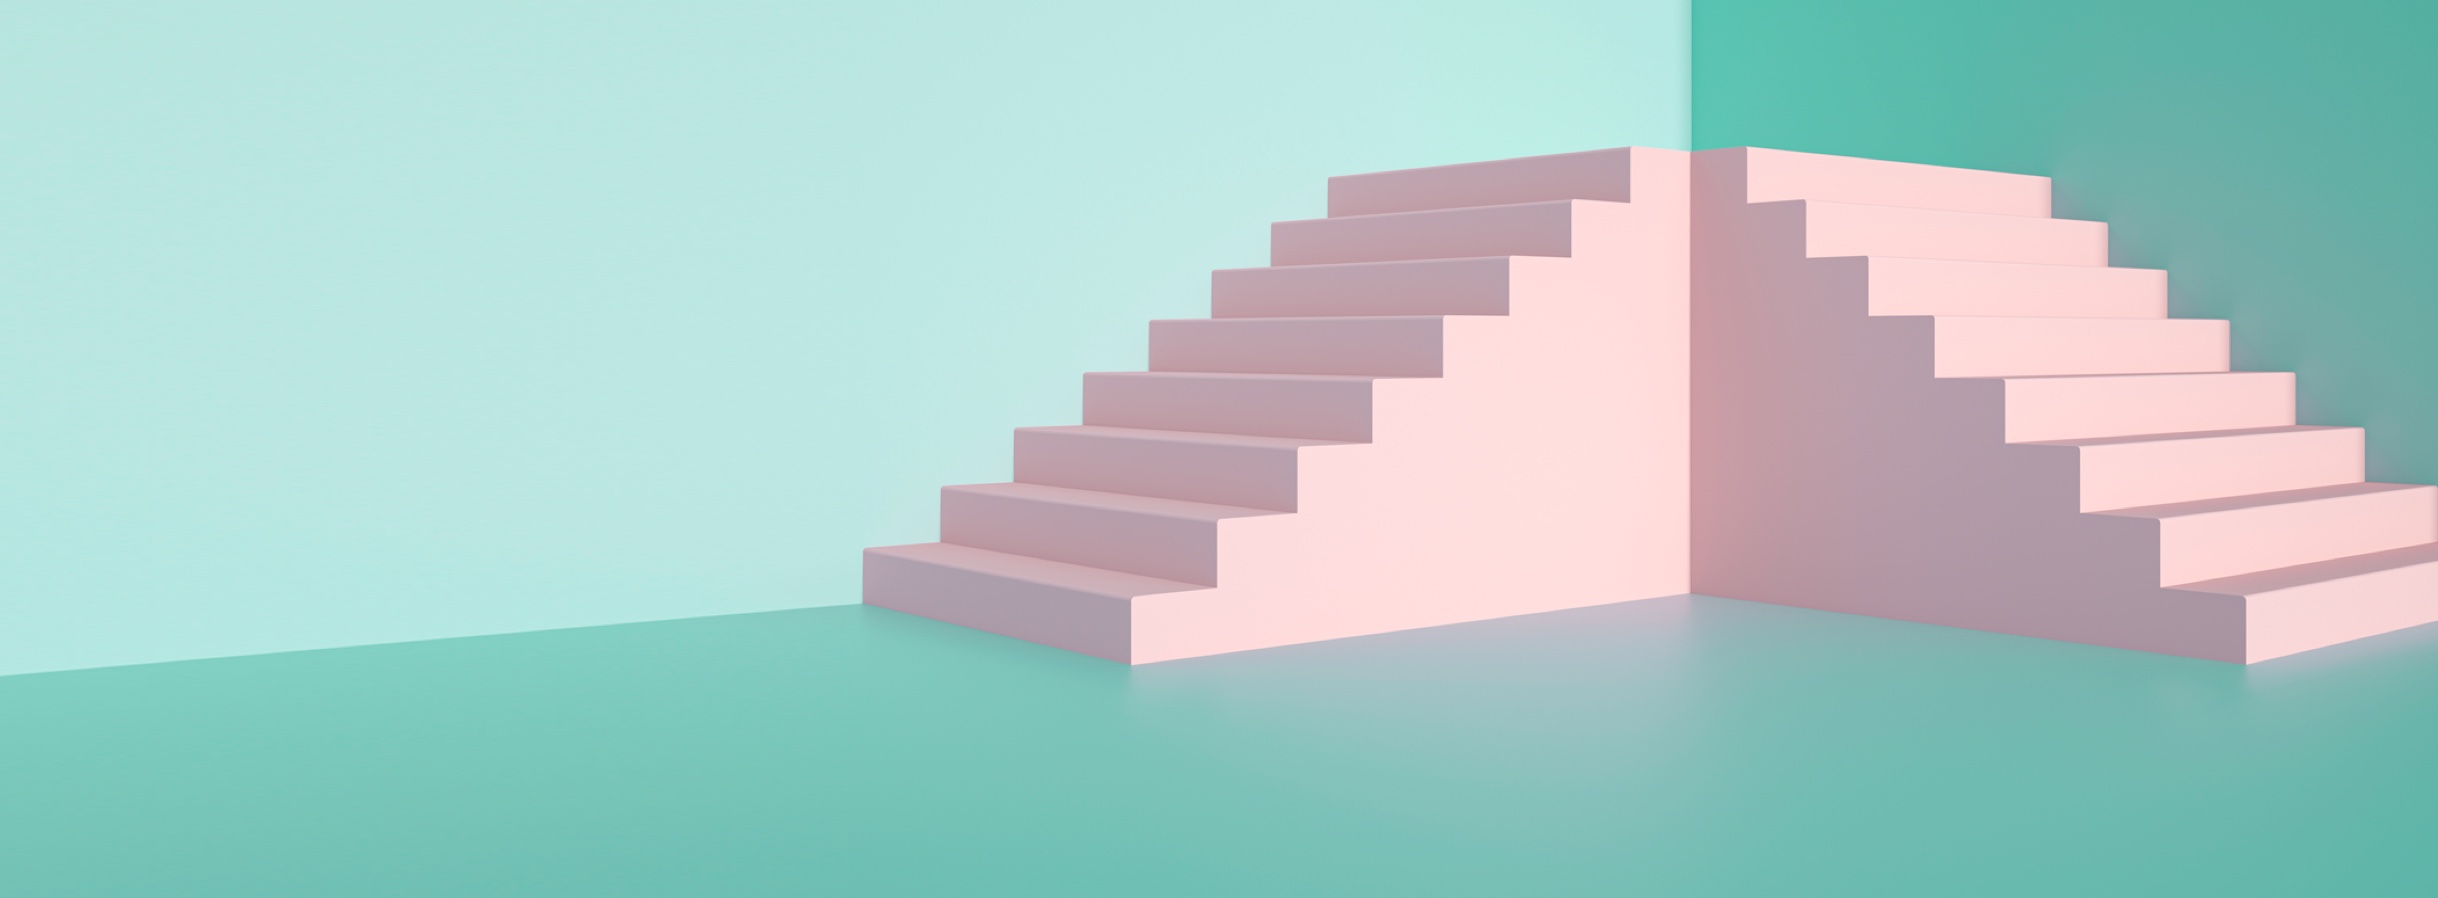 Escaleras